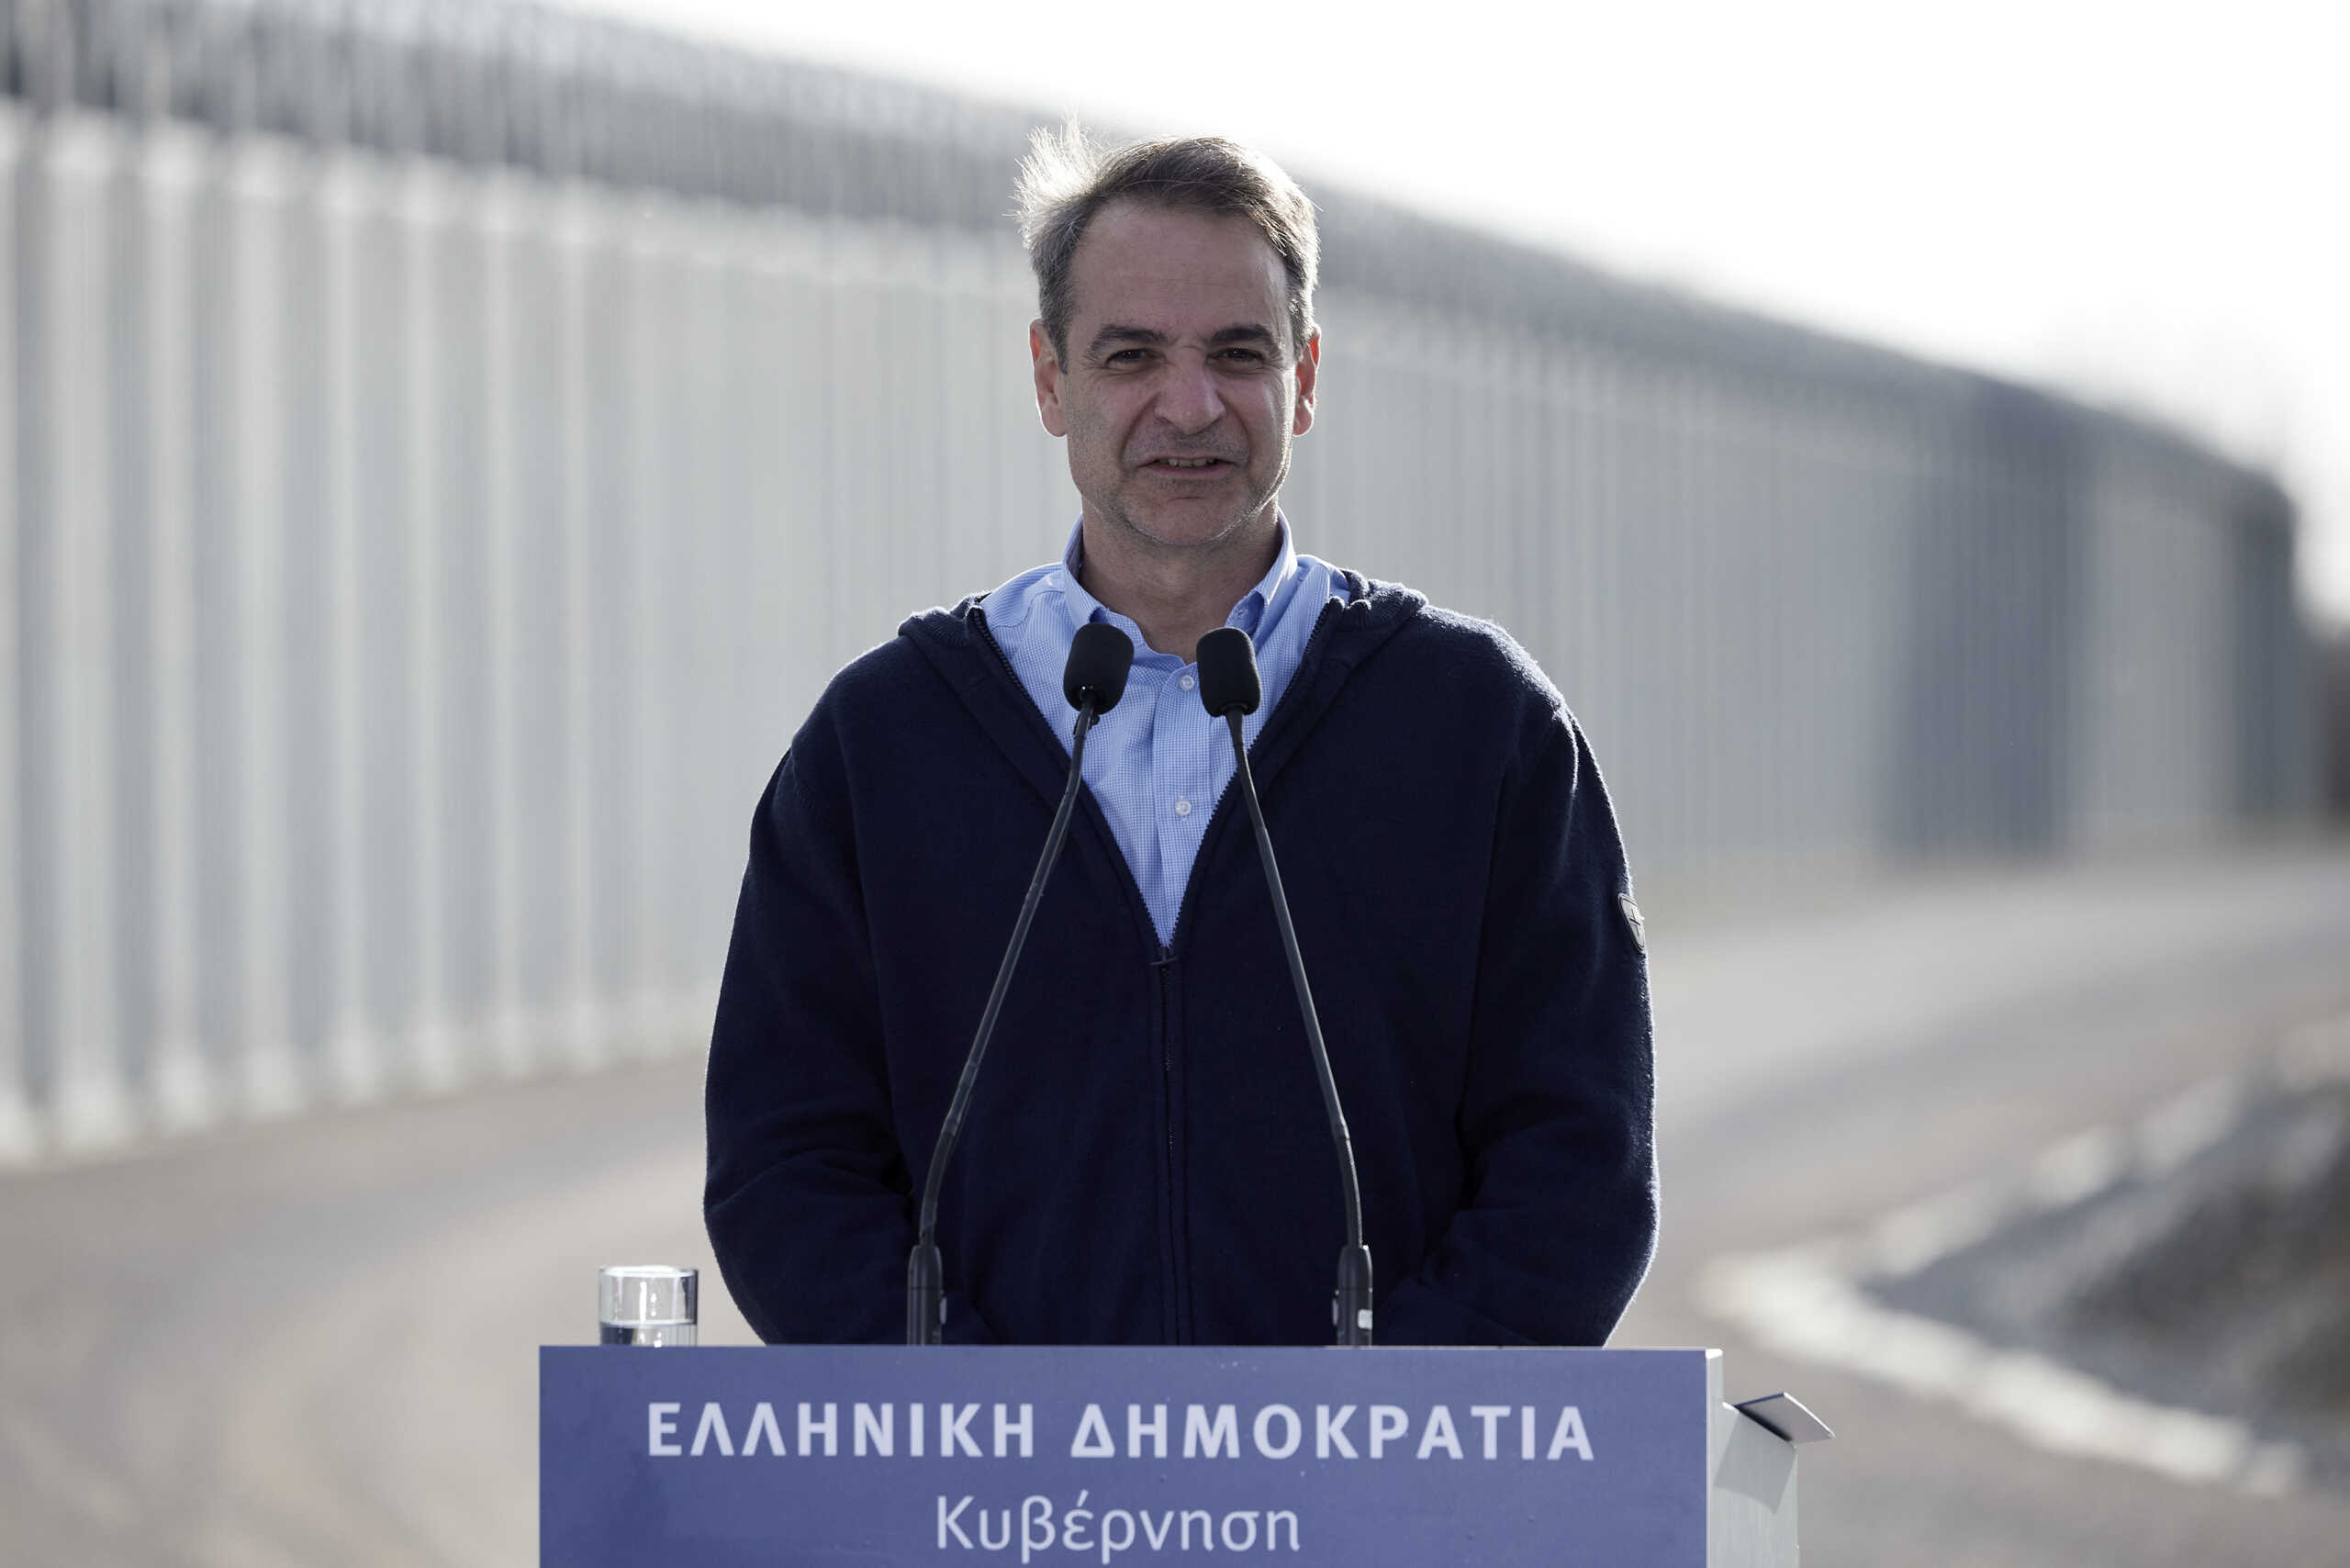 Μητσοτάκης από τον Έβρο: Εθνική εξαίρεση η στάση του κ. Τσίπρα – Χαιρετίζουμε την καλή διάθεση που επιδεικνύεται από την Τουρκία